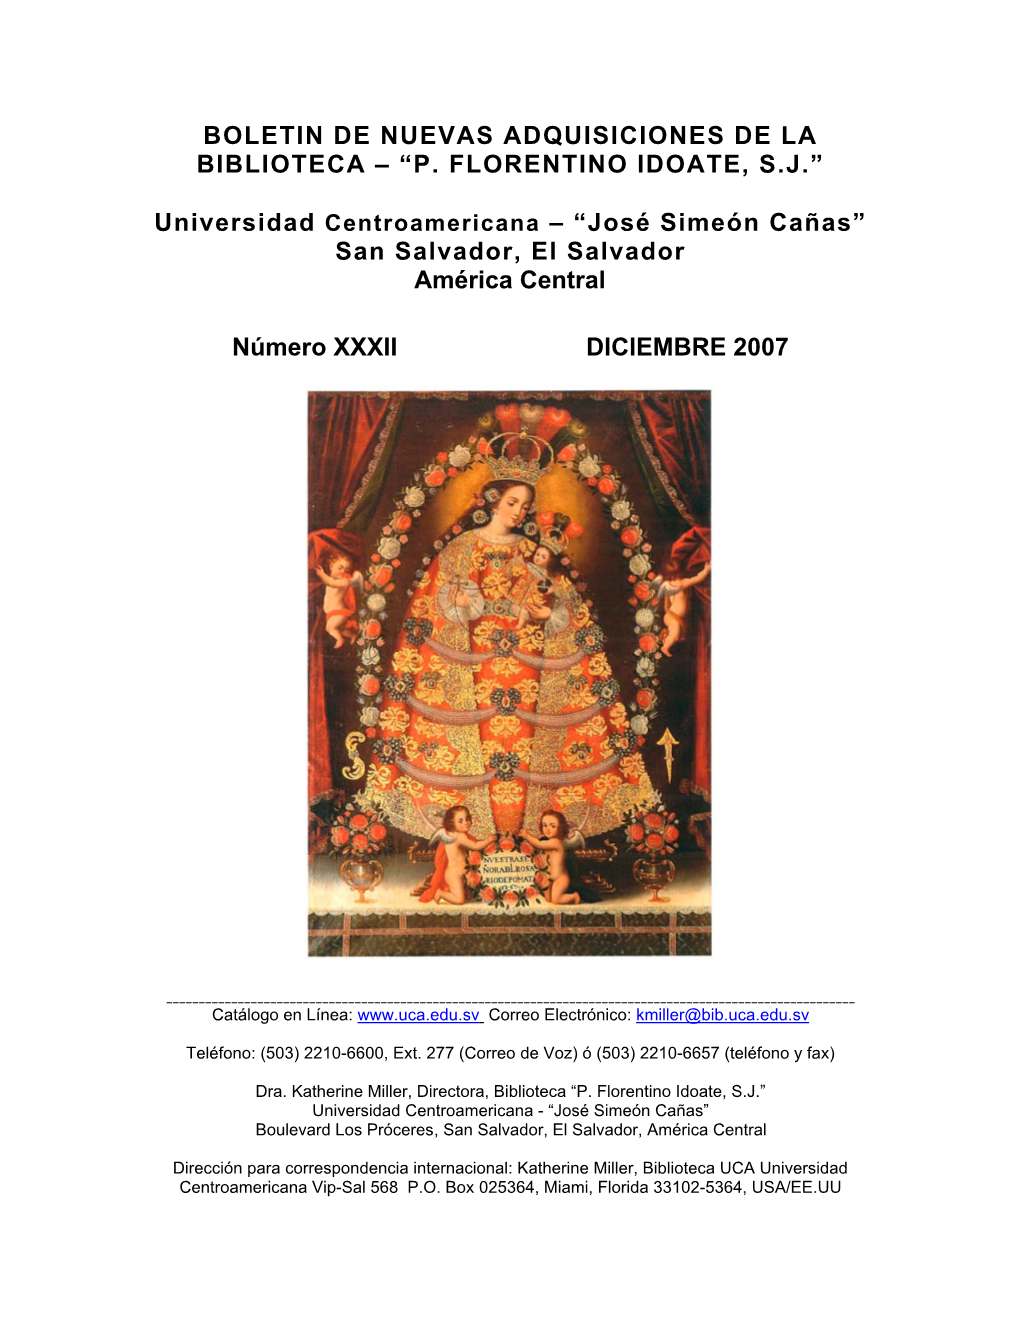 Boletín De Nuevas Adquisiciones No. XXXII De La Biblioteca P. Florentino